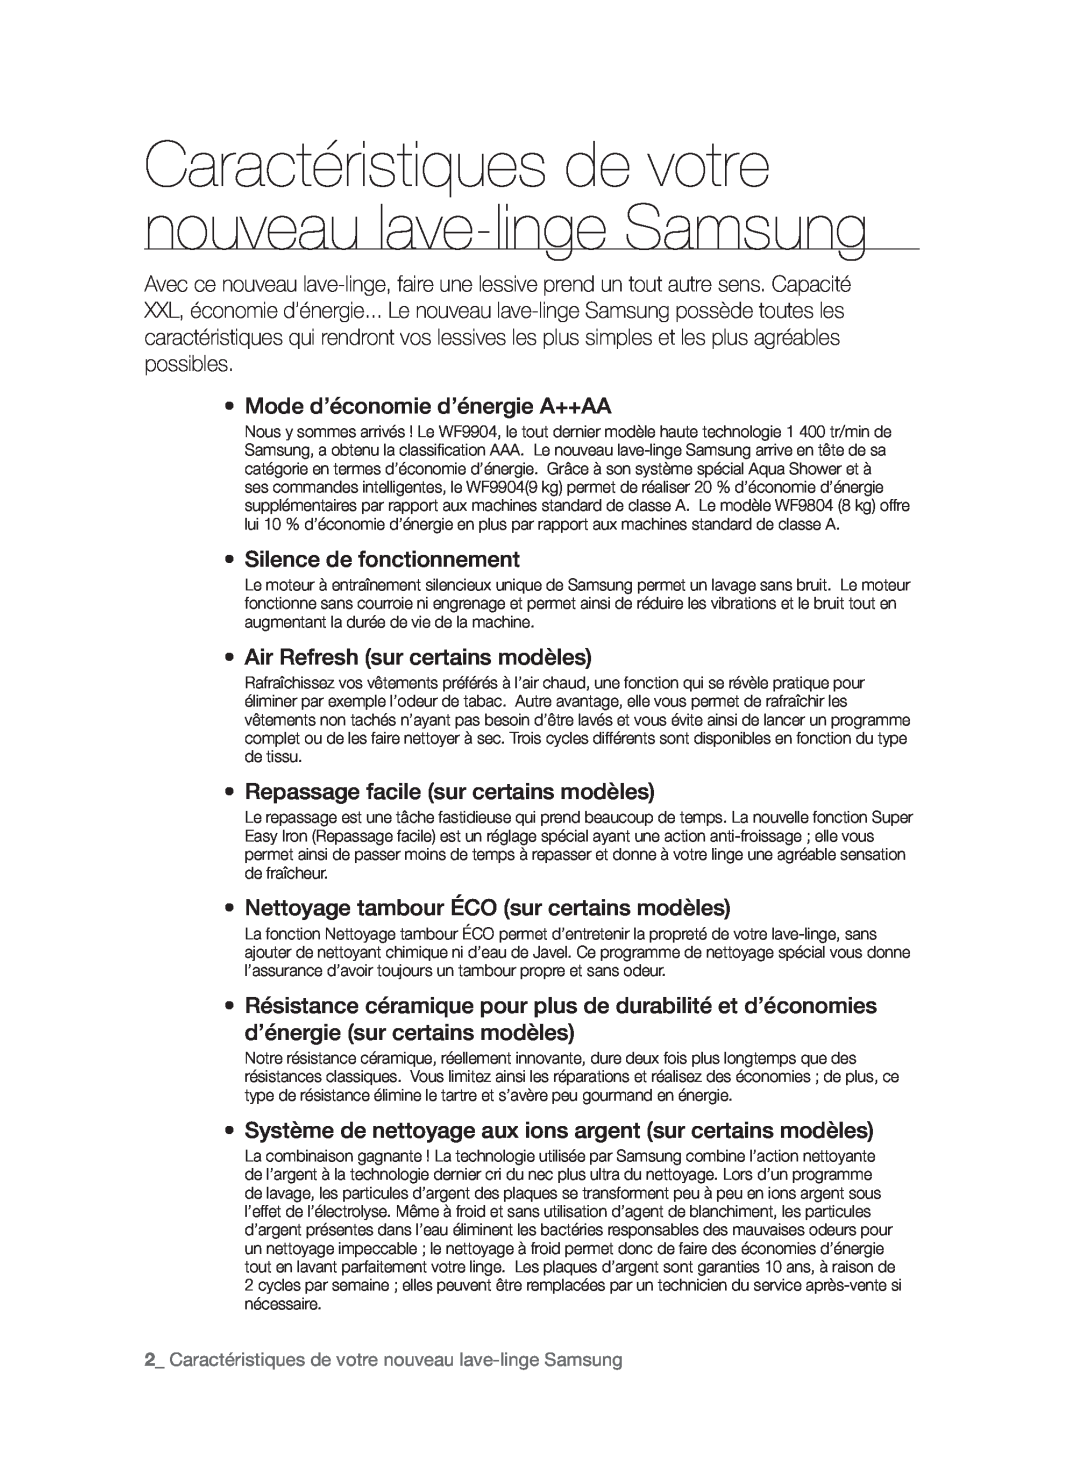 Samsung WF9902AWE/XEF manual Mode d’économie d’énergie A++AA, Silence de fonctionnement, Air Refresh sur certains modèles 